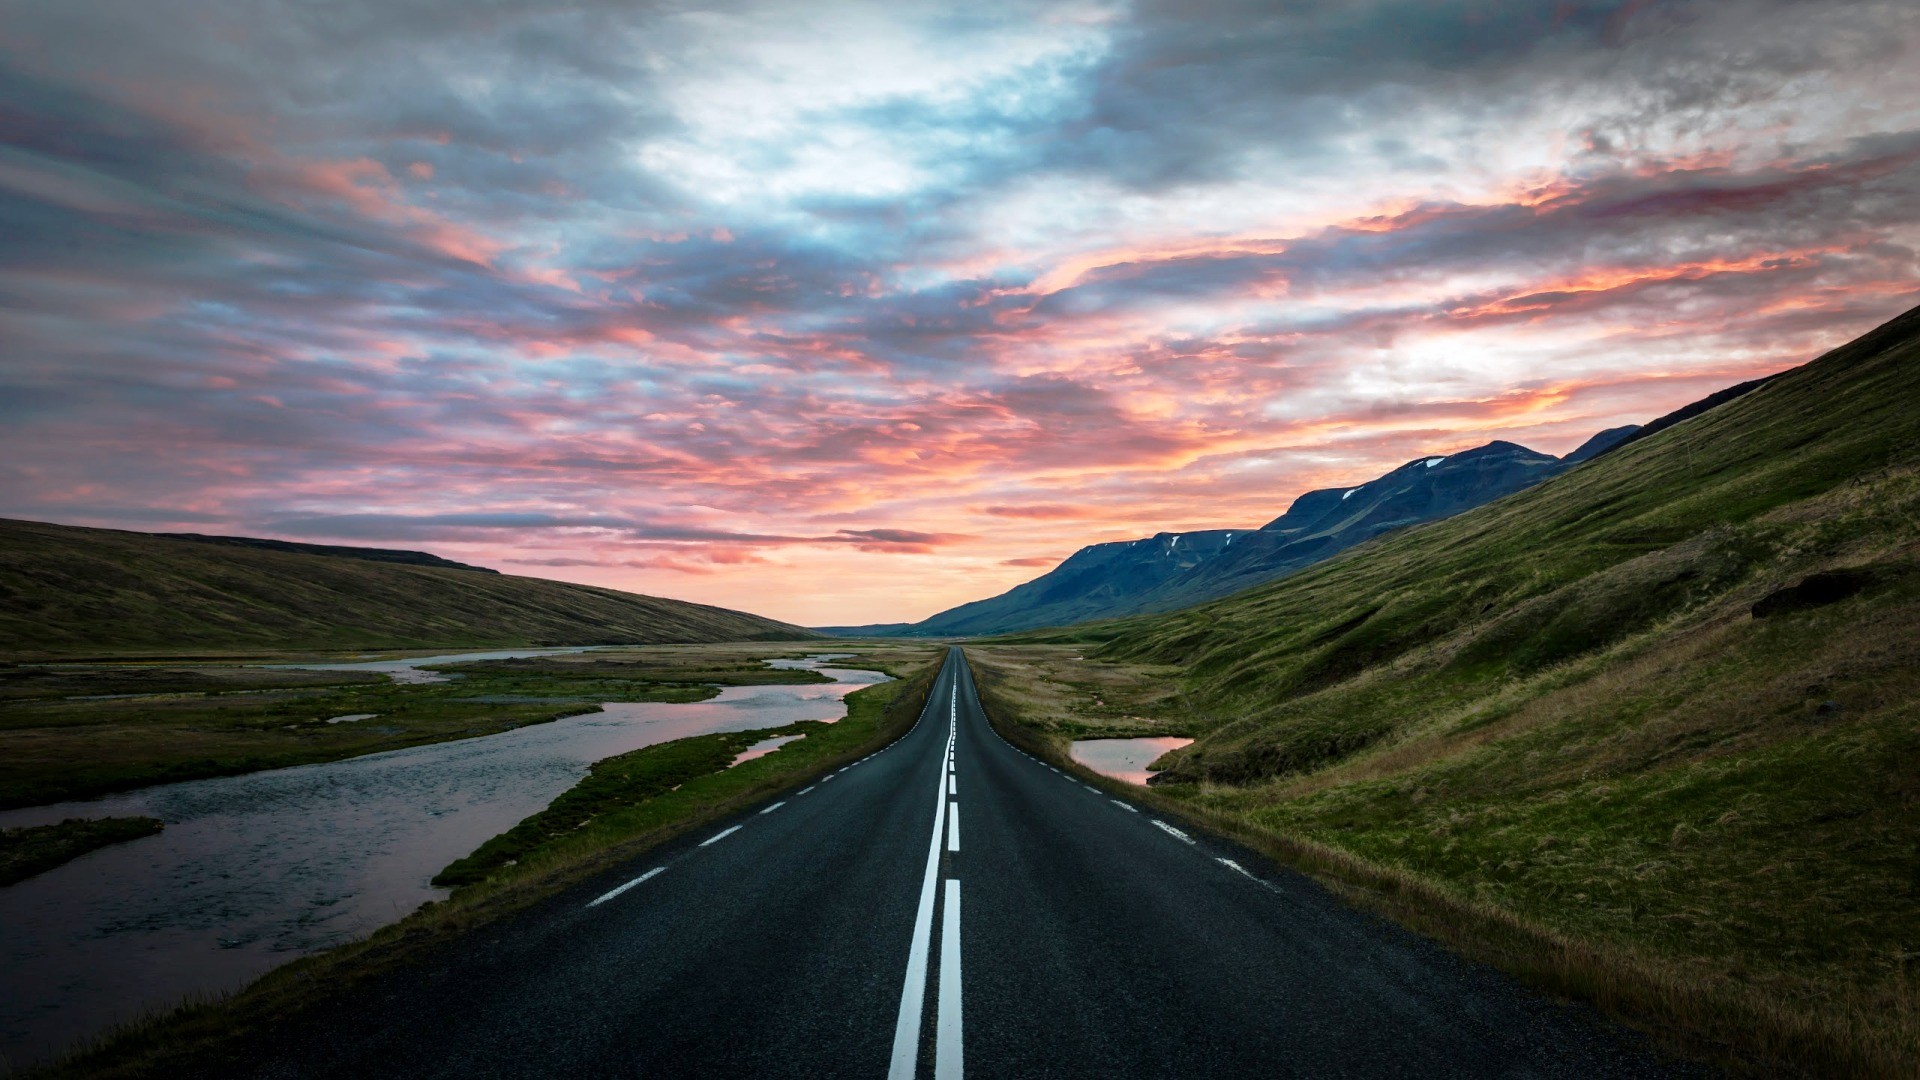 General 1920x1080 nature landscape Iceland road sunset hills nordic landscapes asphalt Trey Ratcliff